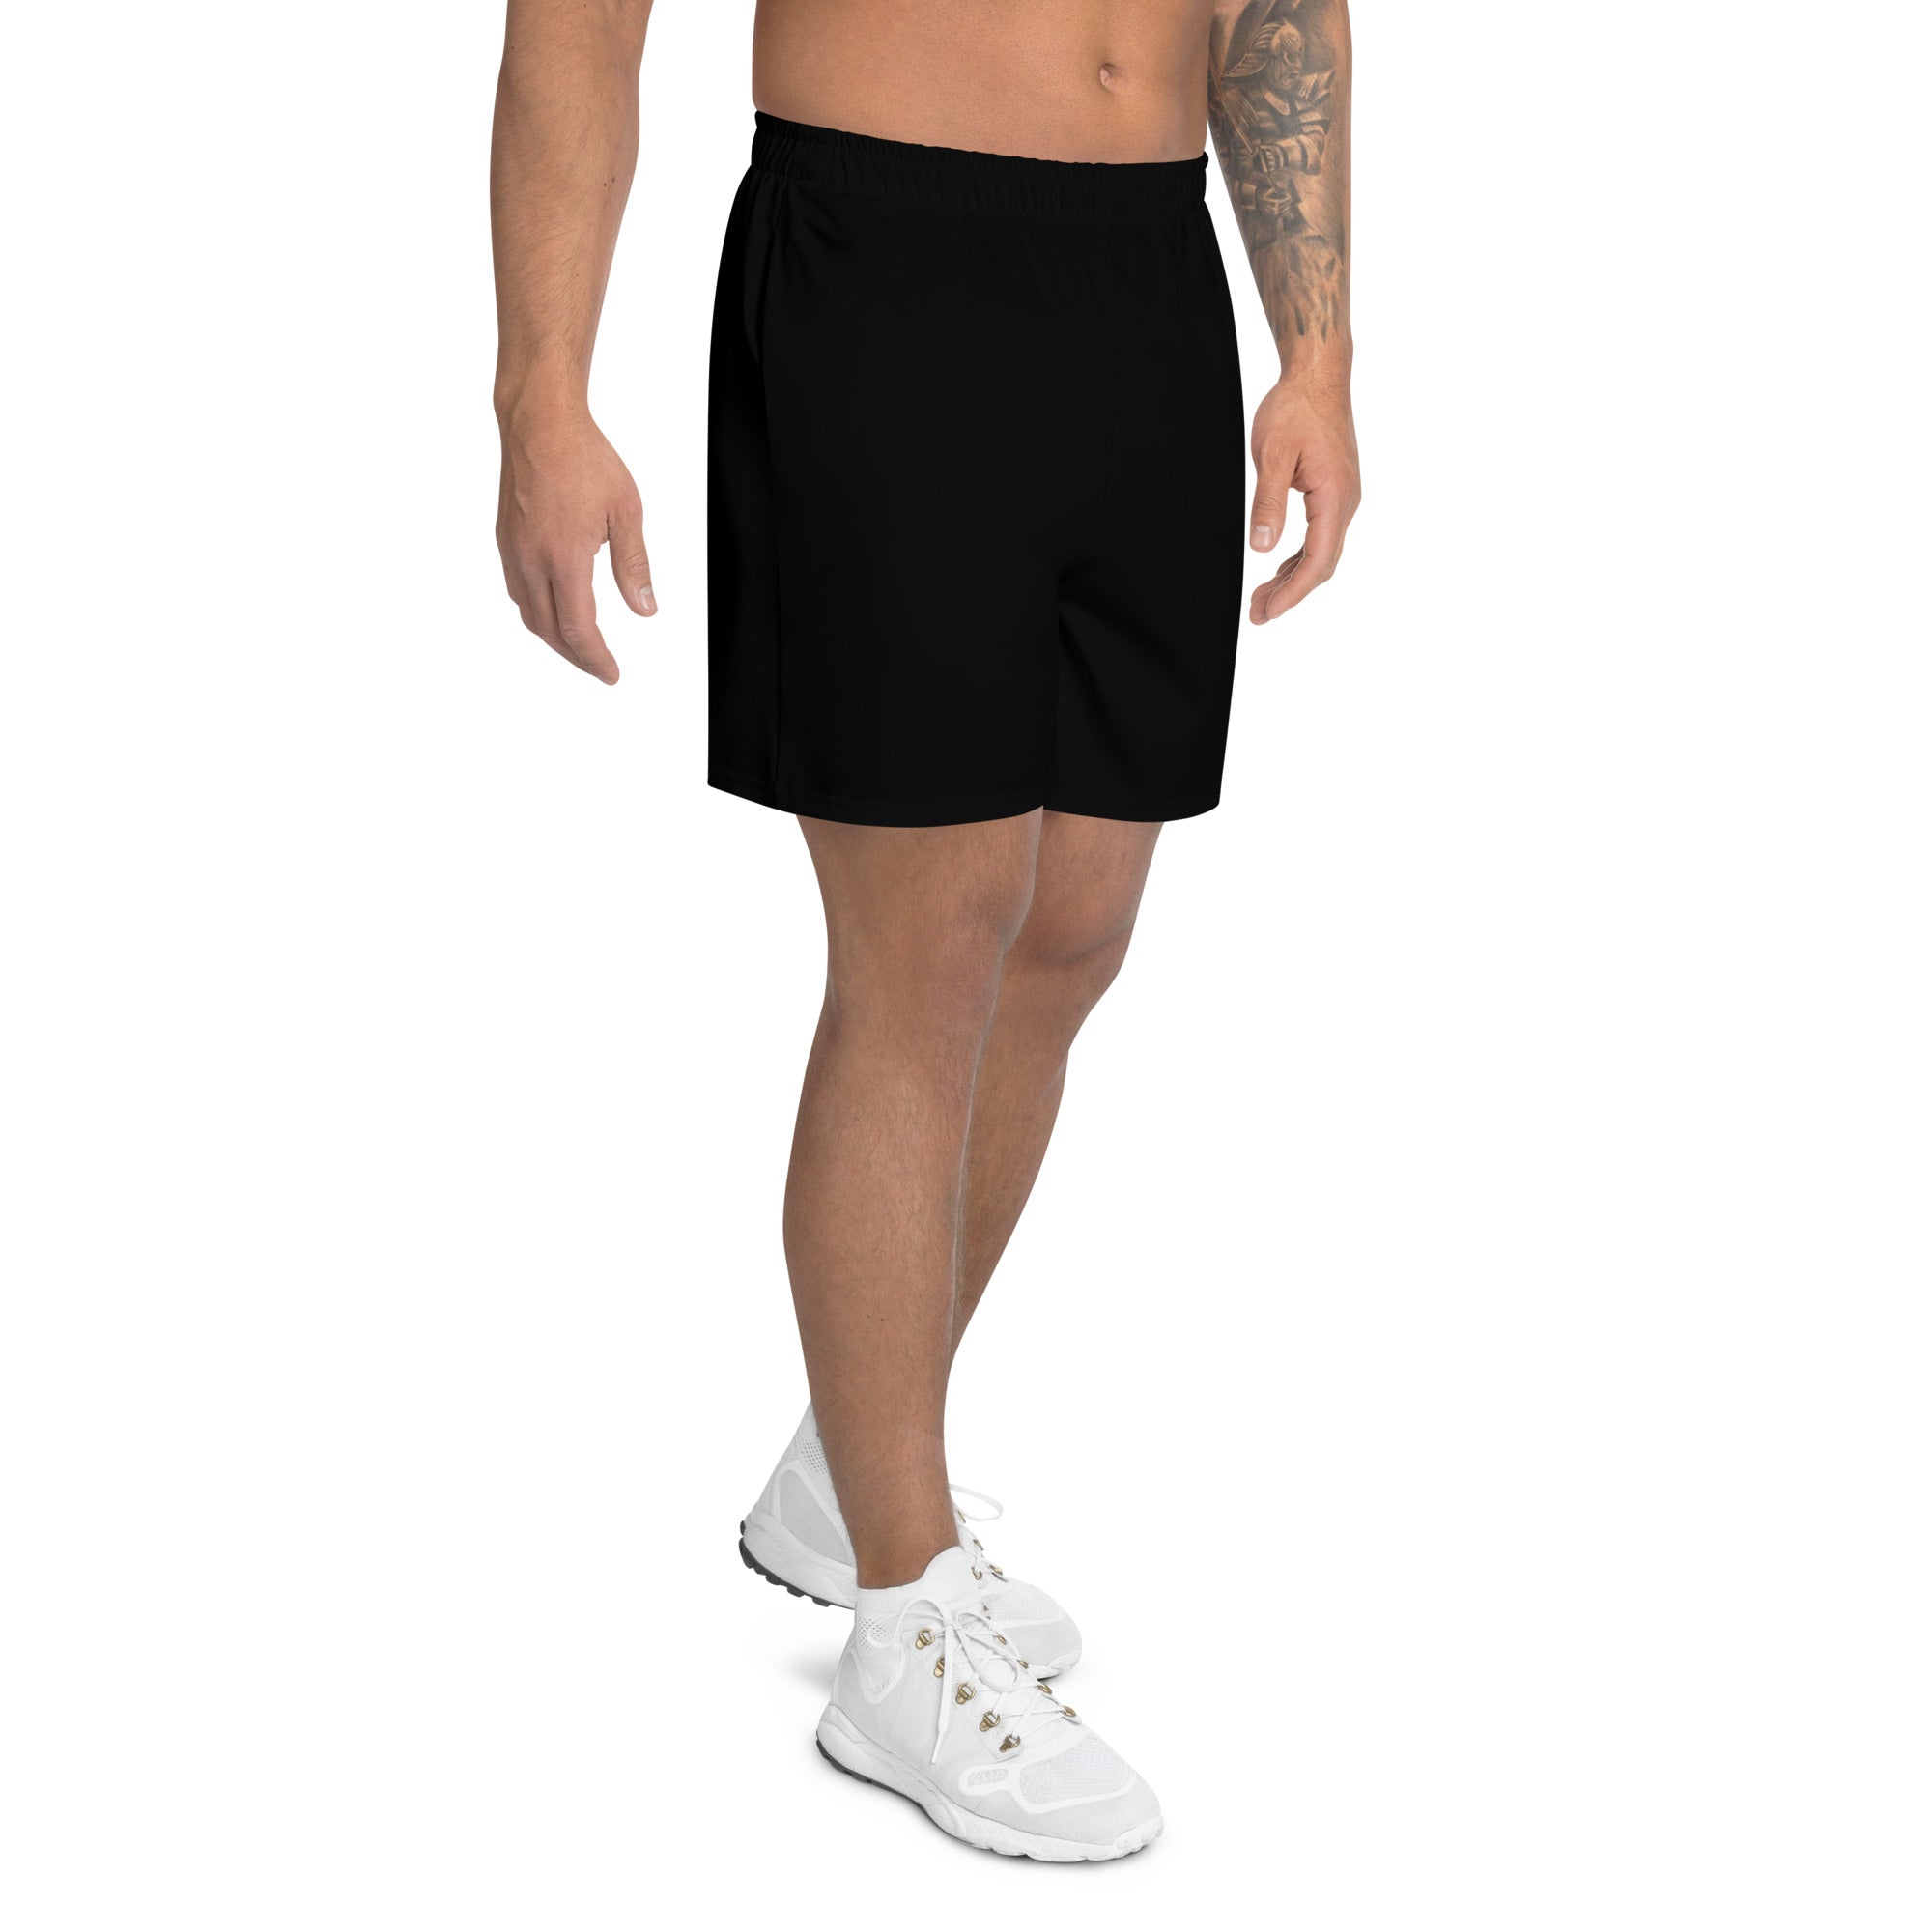 Fitswag Athletic Shorts - Black